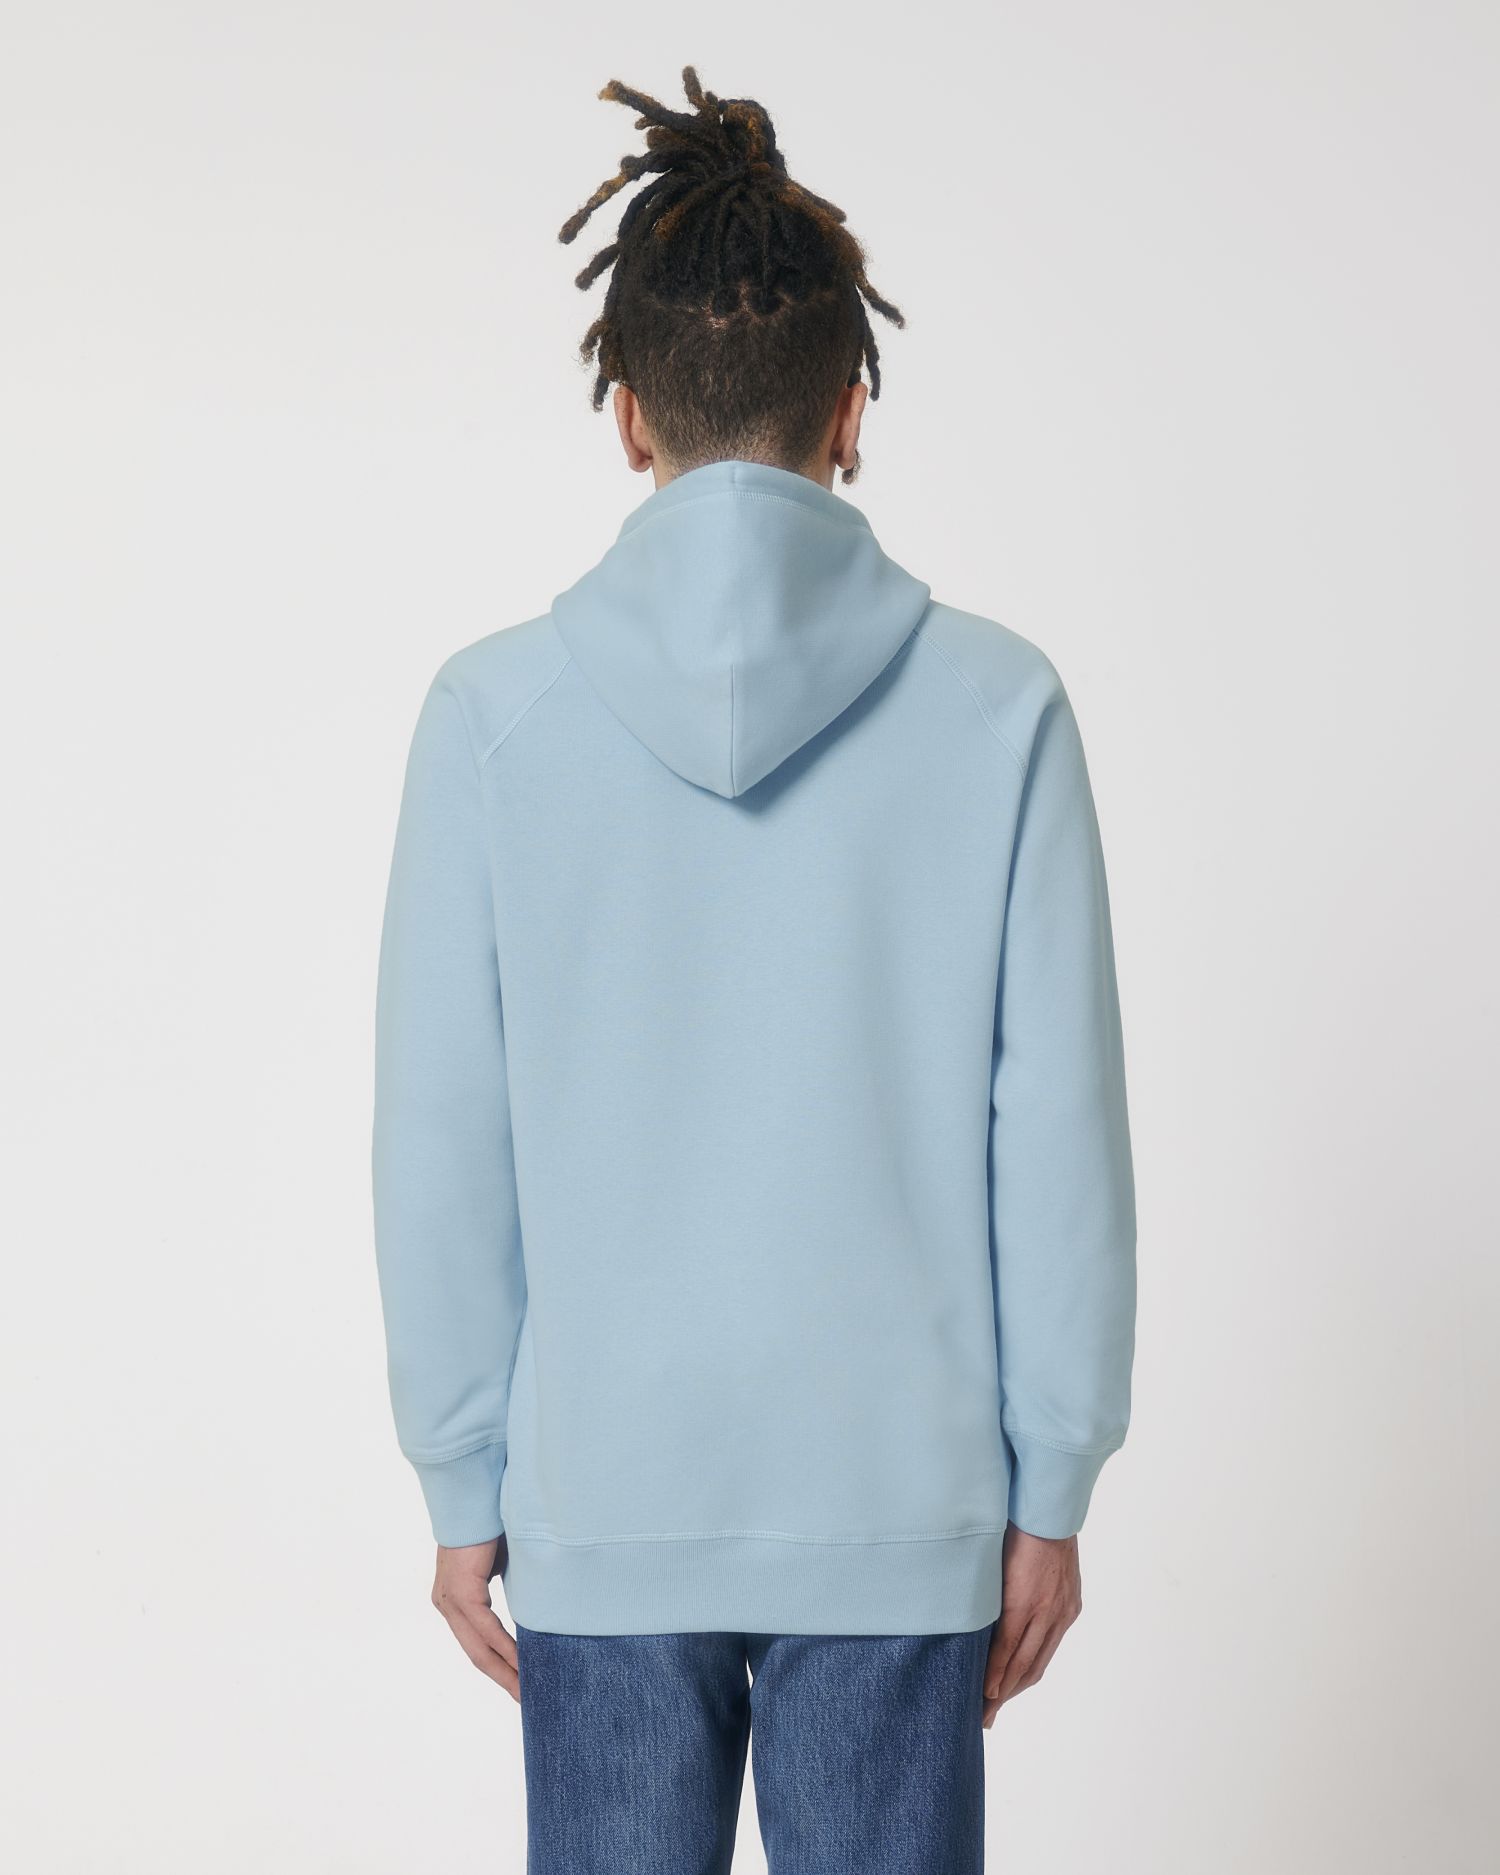 Hoodie sweatshirts Sider in Farbe Sky blue